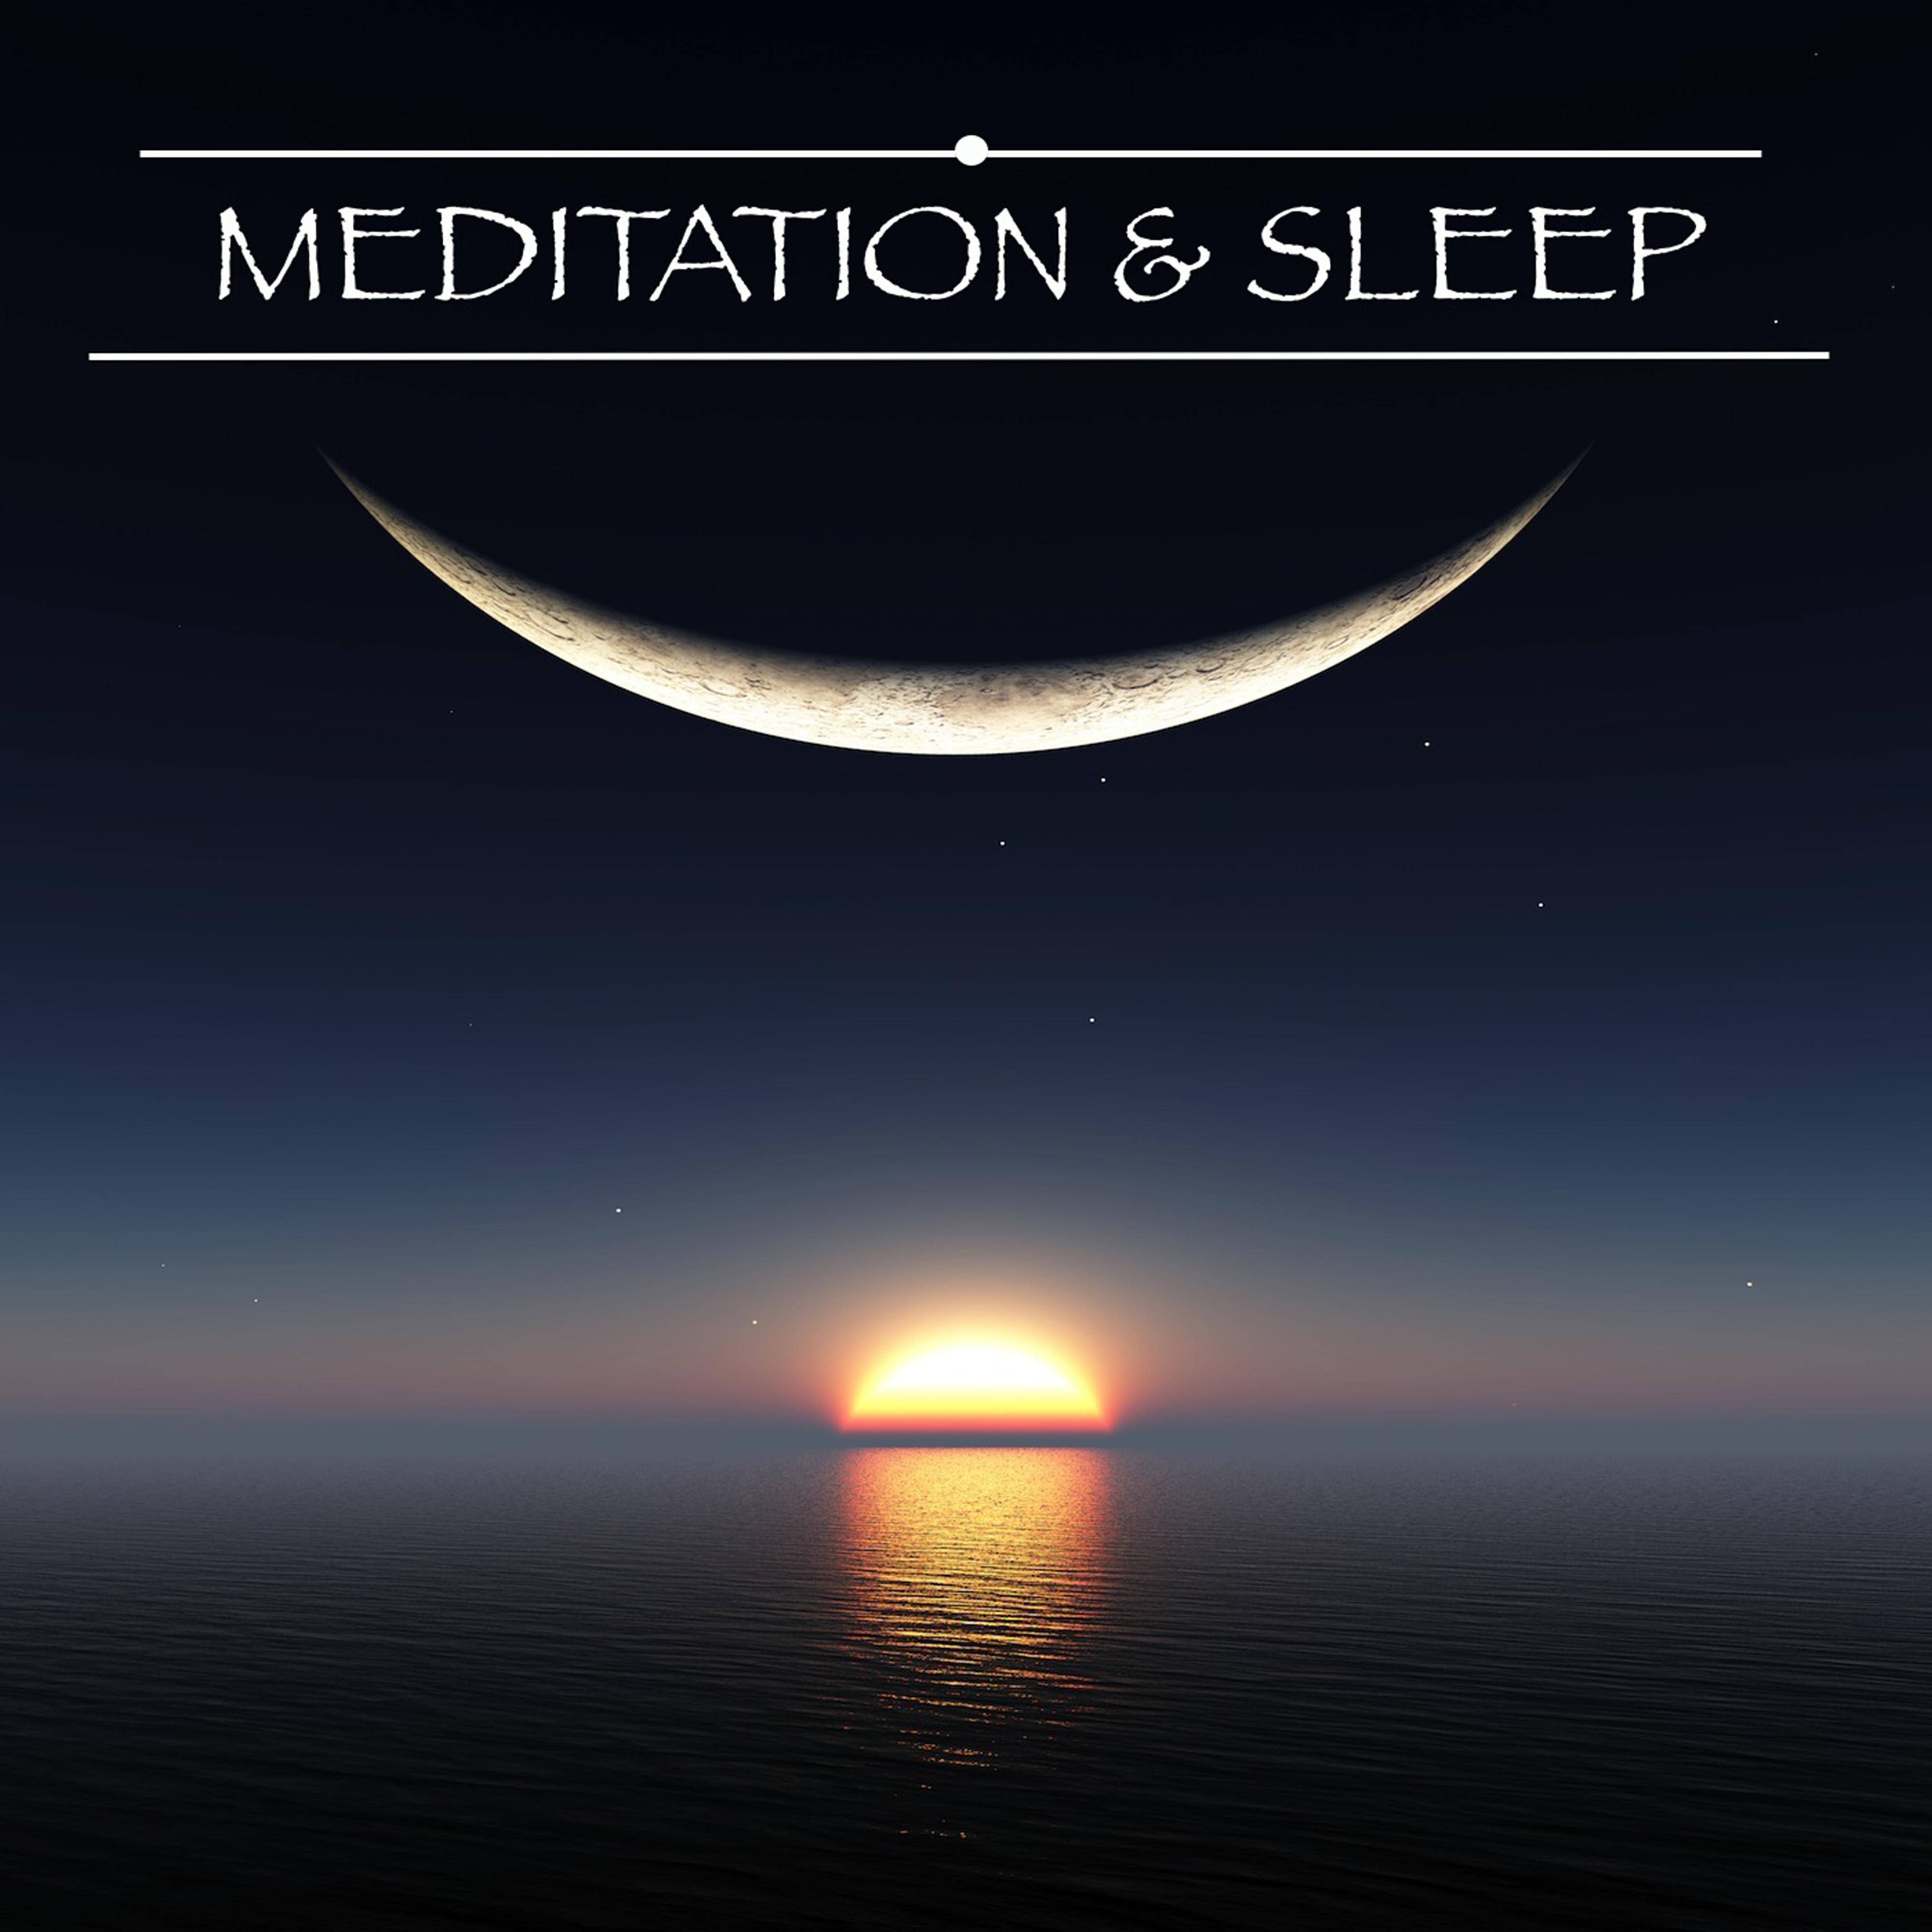 Meditation & Sleep - Relaxation Sleeping Mindfulness Meditation Music, Relaxing Mind Music for Good Night, Sleeping and Dreaming